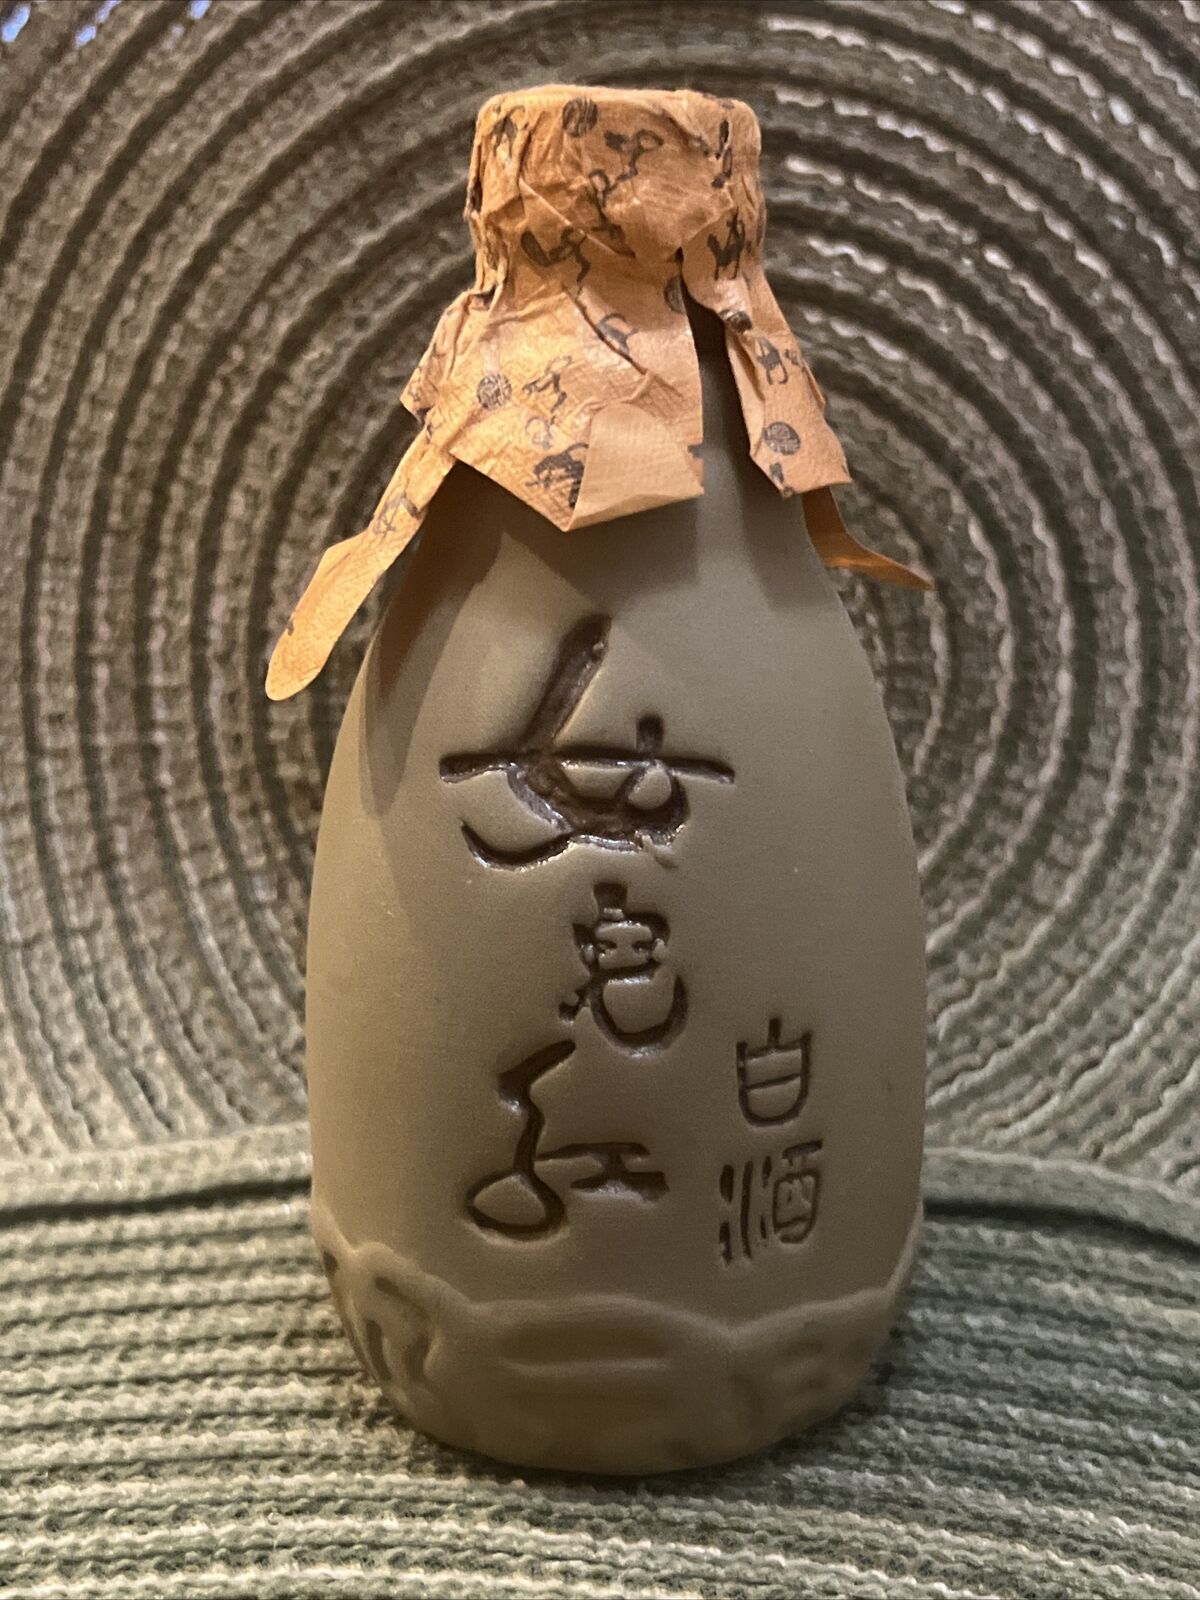 Japanese Sake Bottle Hand Painted 5” w/Cork Stopper